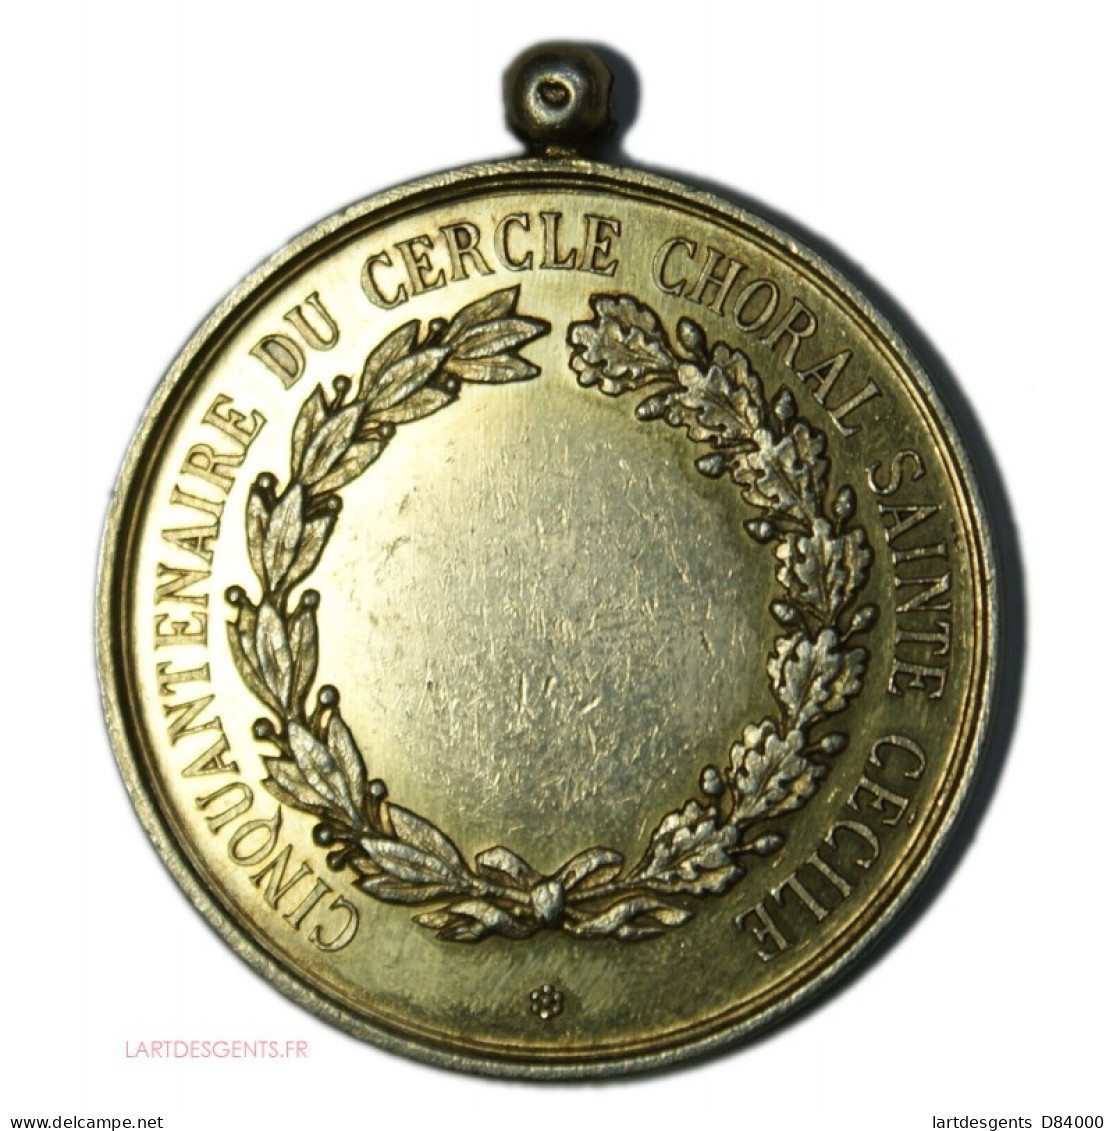 Médaille Argent Cinquantenaire Du Cercle Choral ST CECILE 1892, CONCOURS MUSICAL - Monarchia / Nobiltà